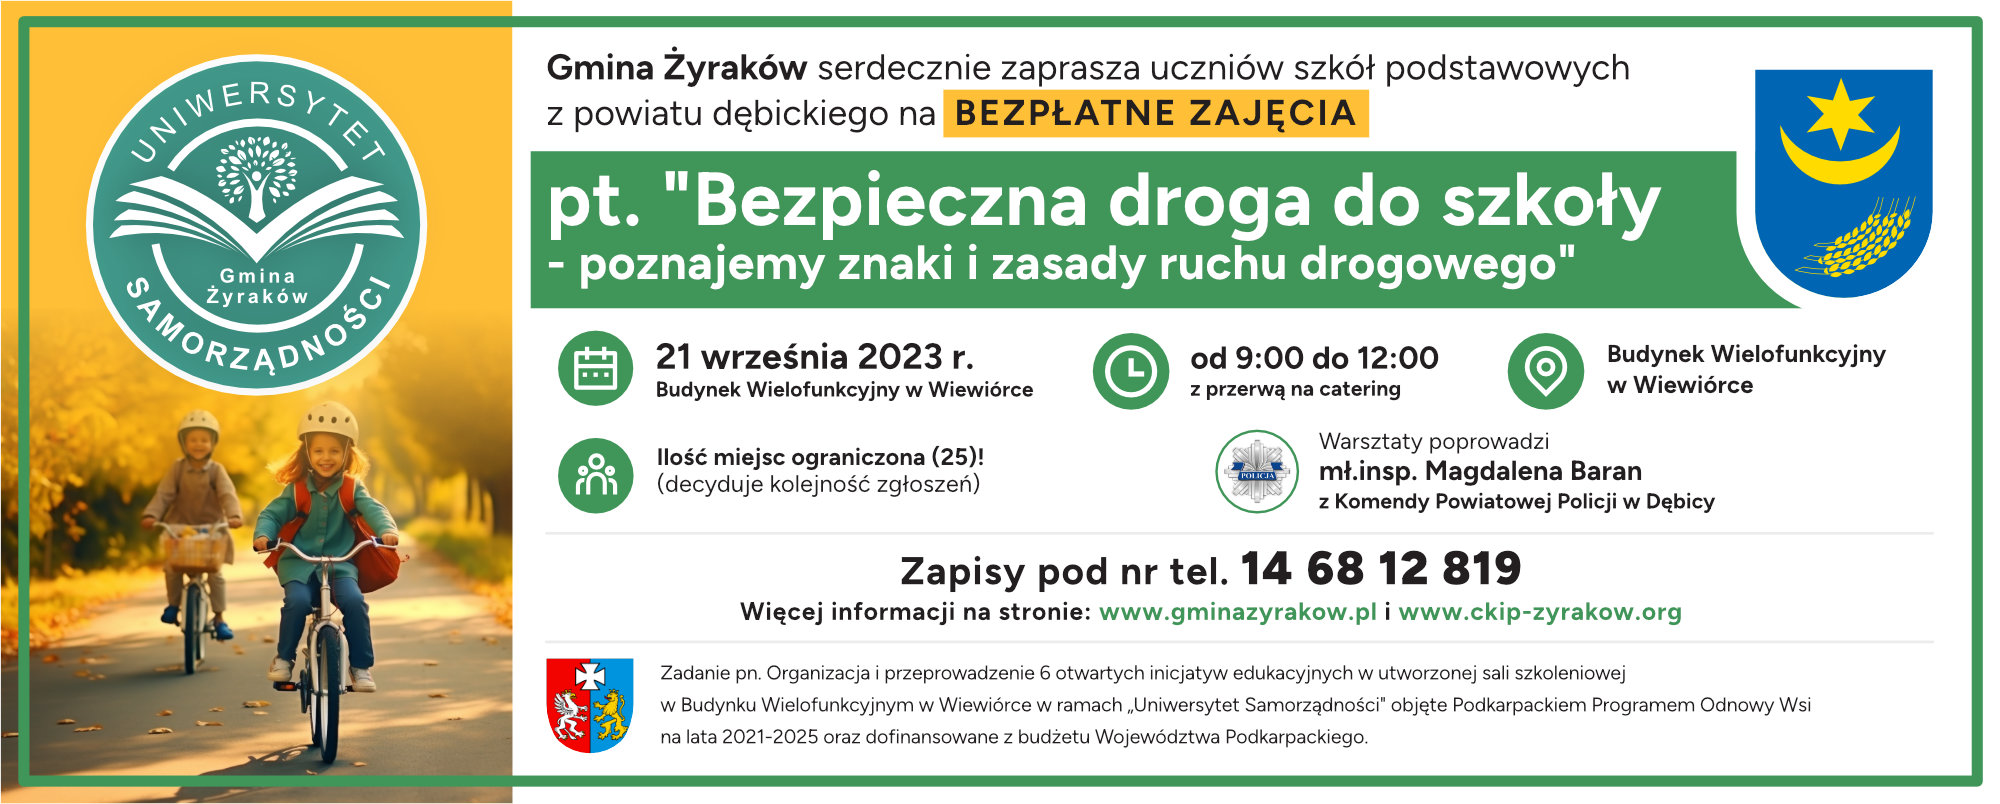 Plakat Uniwersytet Samorządności 2023 - Bezpieczna droga do szkoły